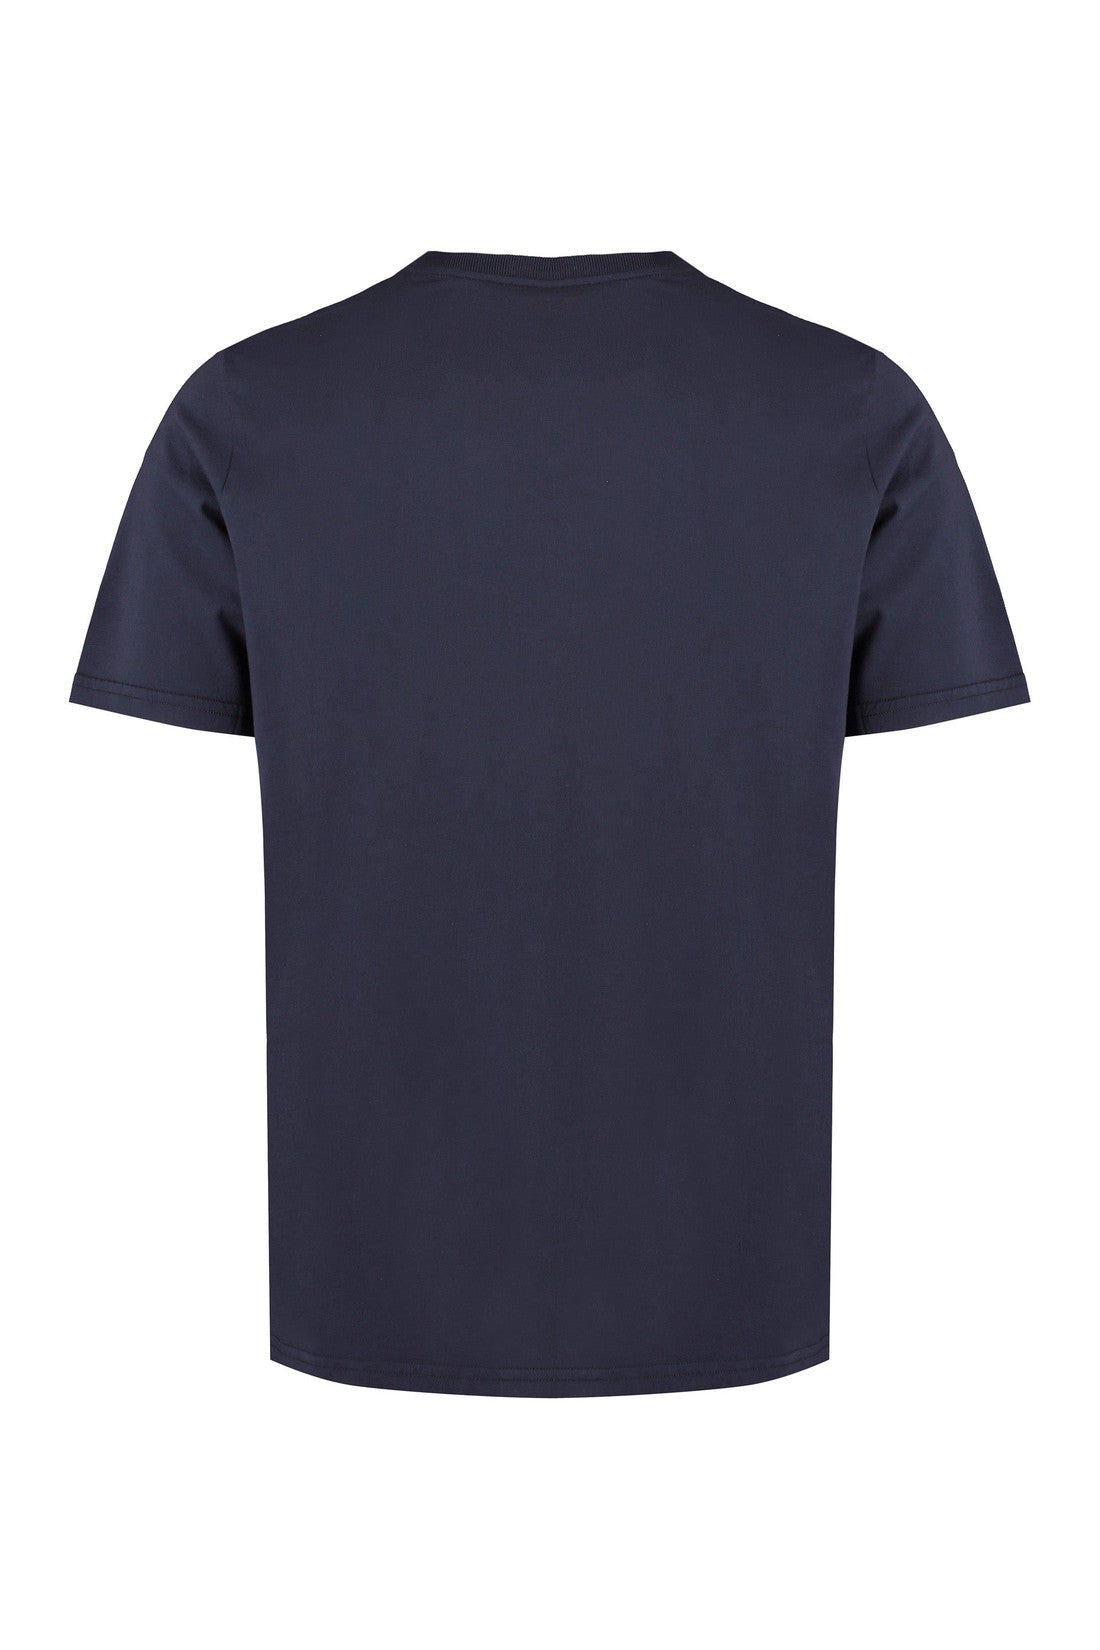 Autry-OUTLET-SALE-Cotton crew-neck T-shirt-ARCHIVIST